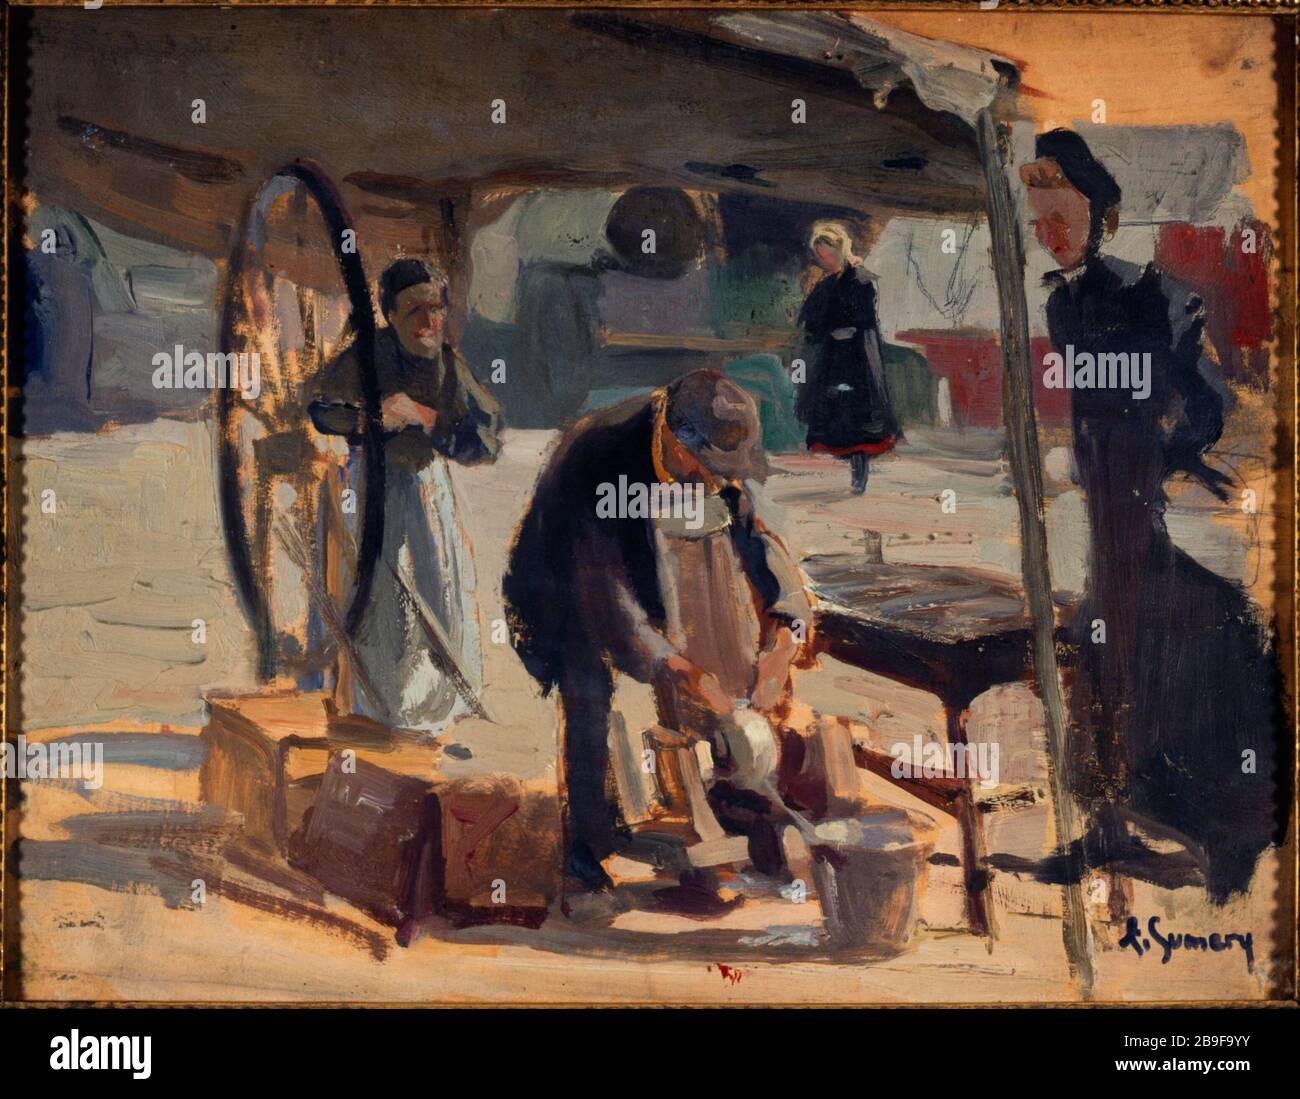 Grinder in Passy Adolphe-Ernest Gumery (1861-1943). Rémouleur à Passy. Huile sur bois. 1890. Paris, musée Carnavalet. Stock Photo